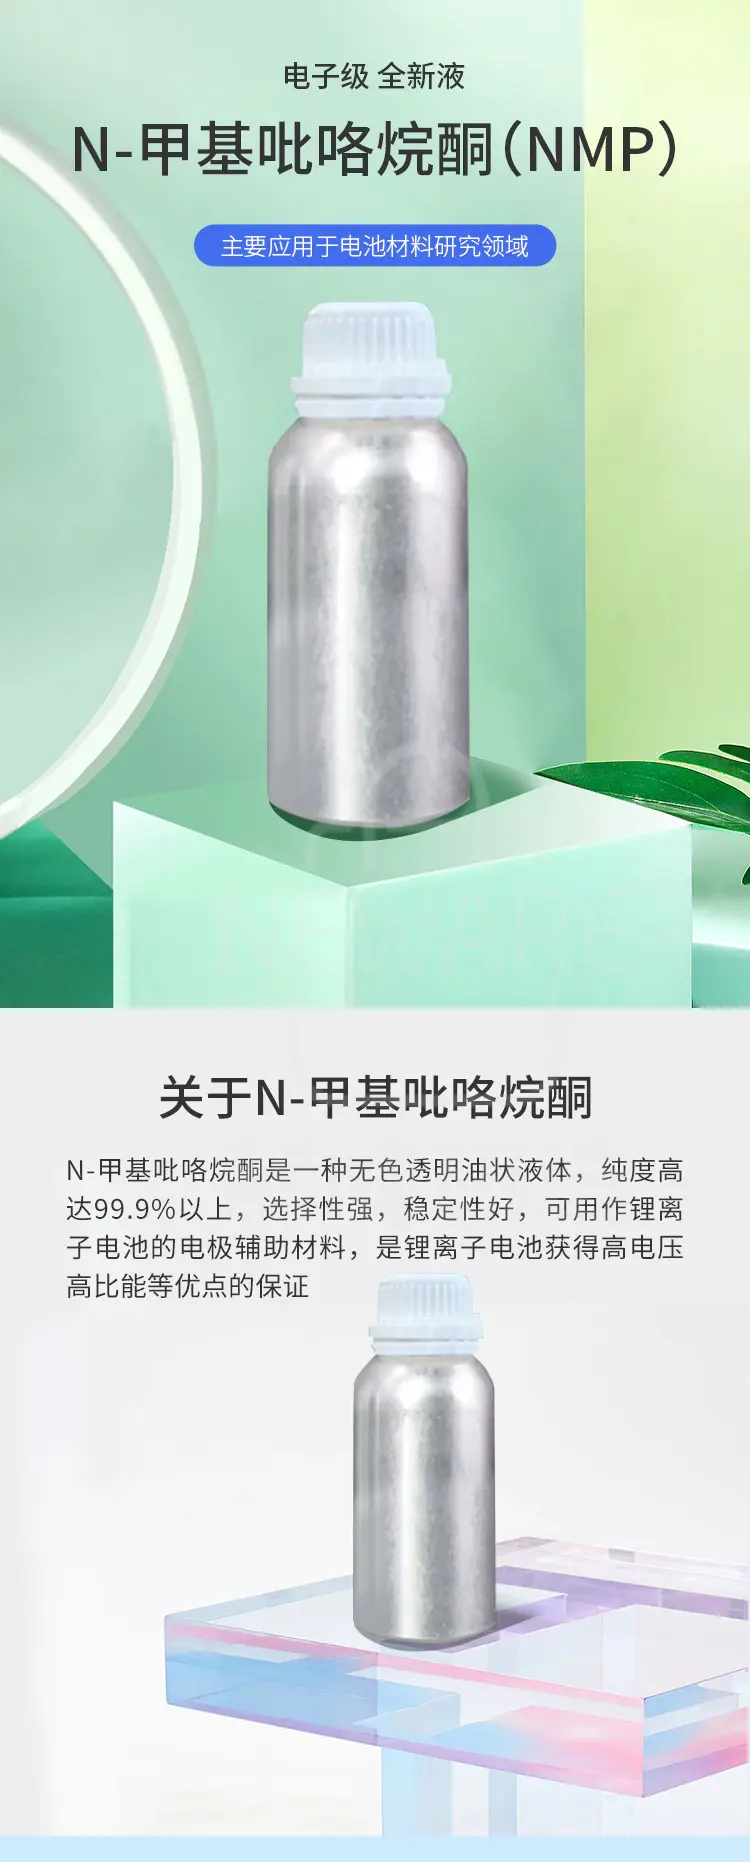 N-甲基吡咯烷酮（NMP）主要应用于电池材料研究领域